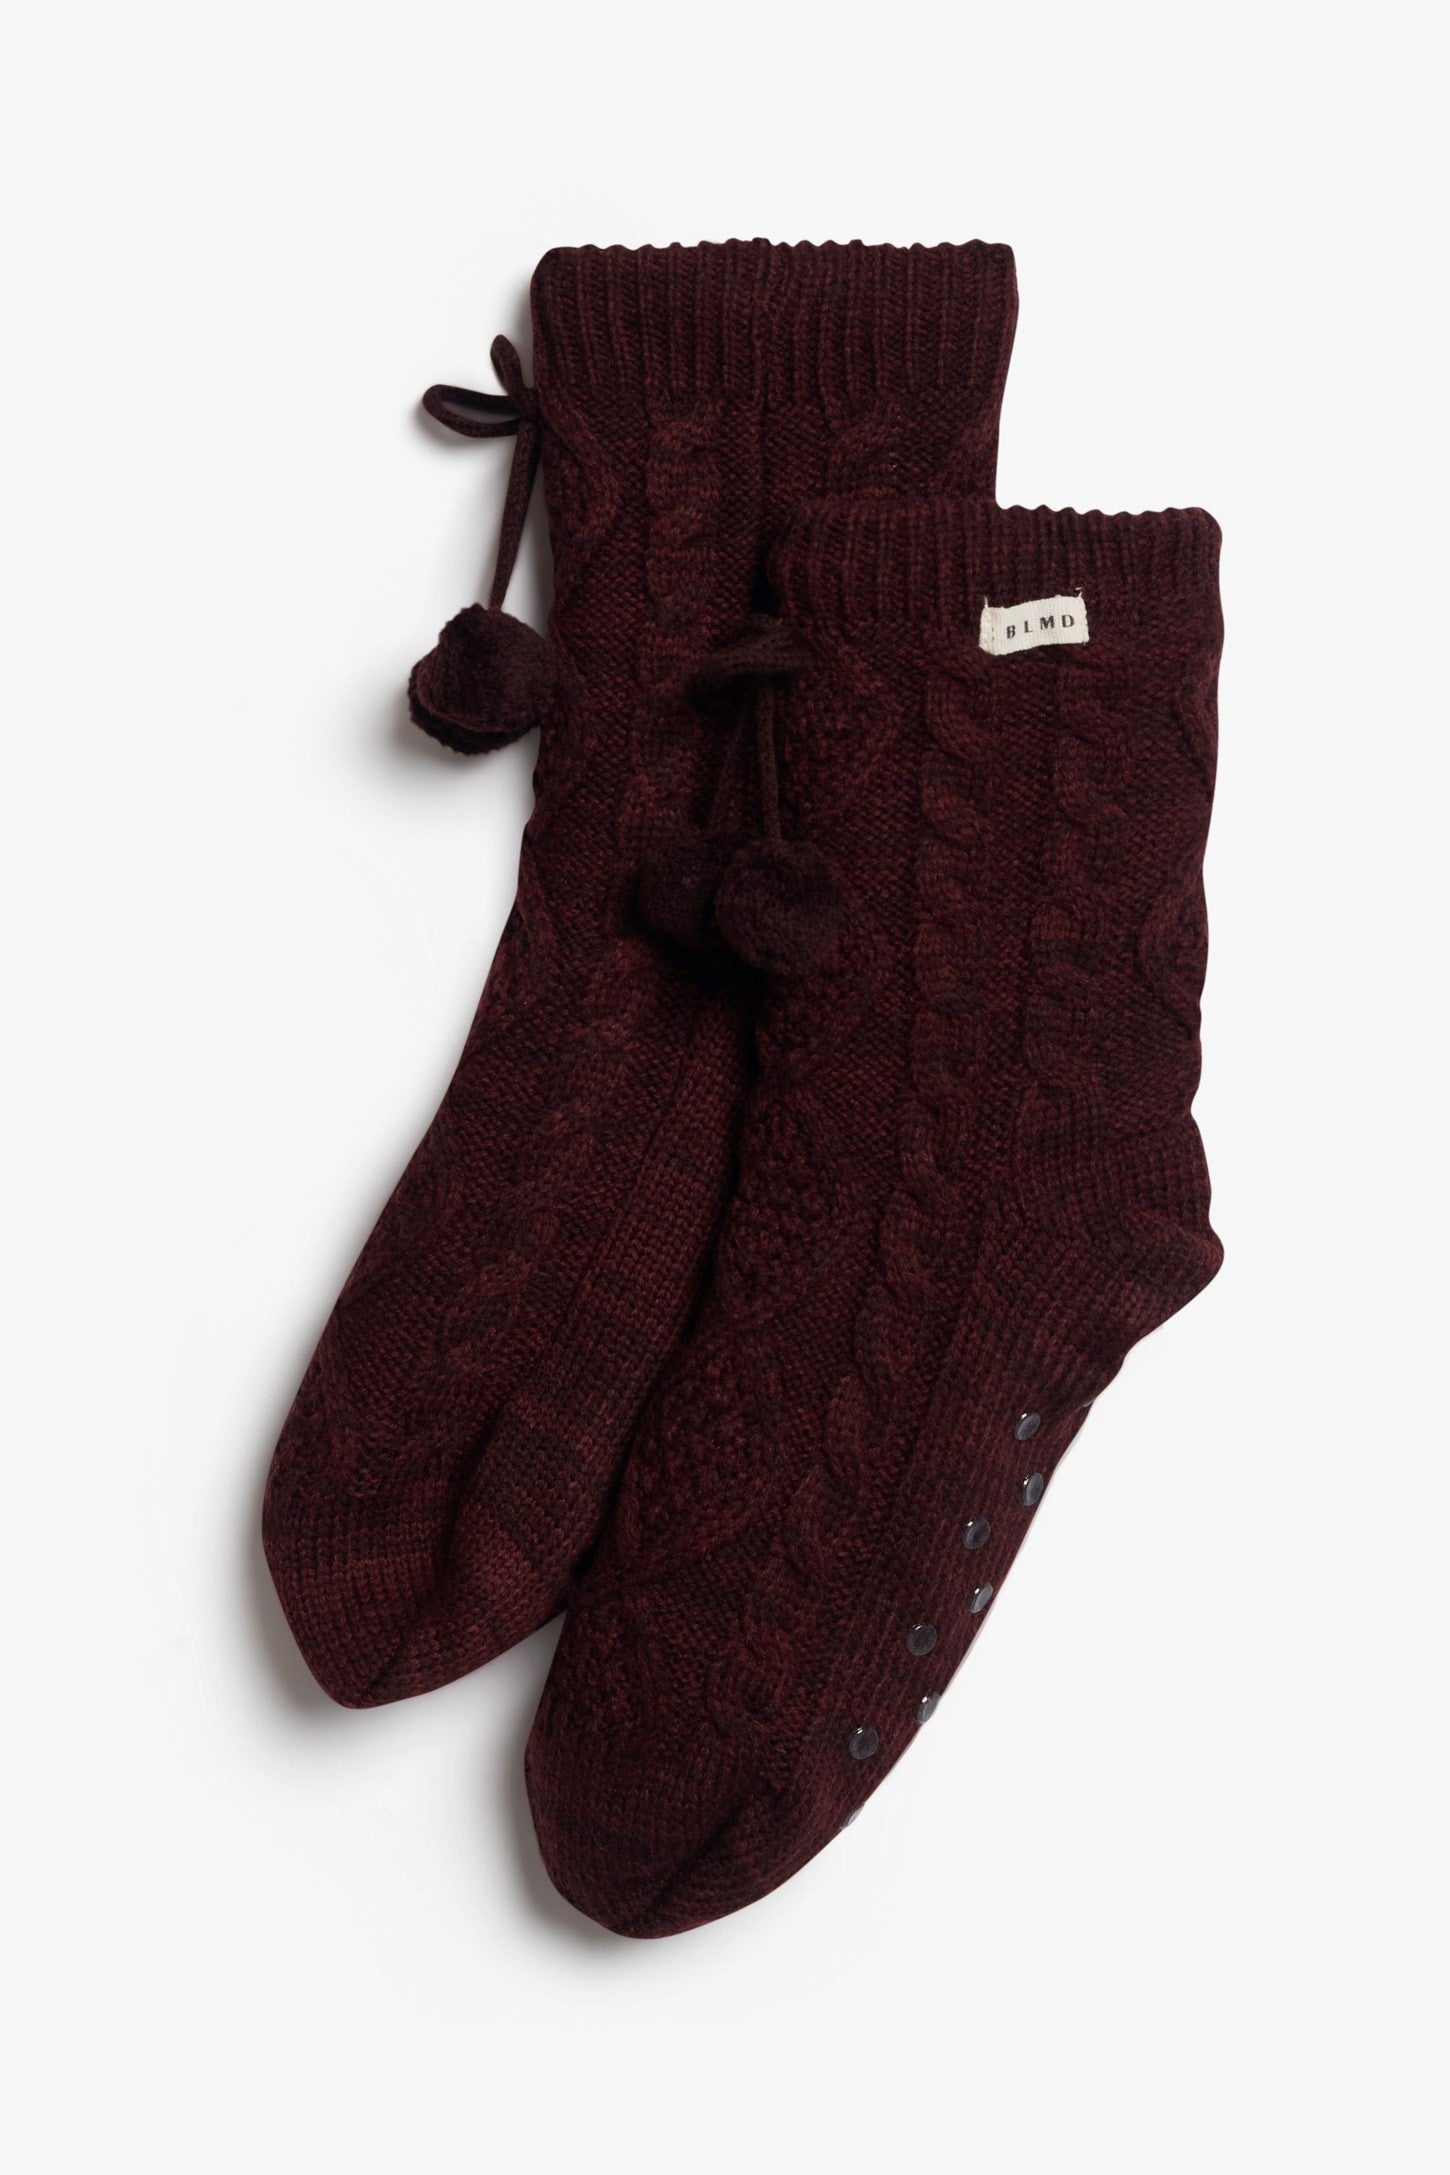 Chaussettes en tricot câblé et sherpa, 2/20$ - Ado fille && ROUGE VIN